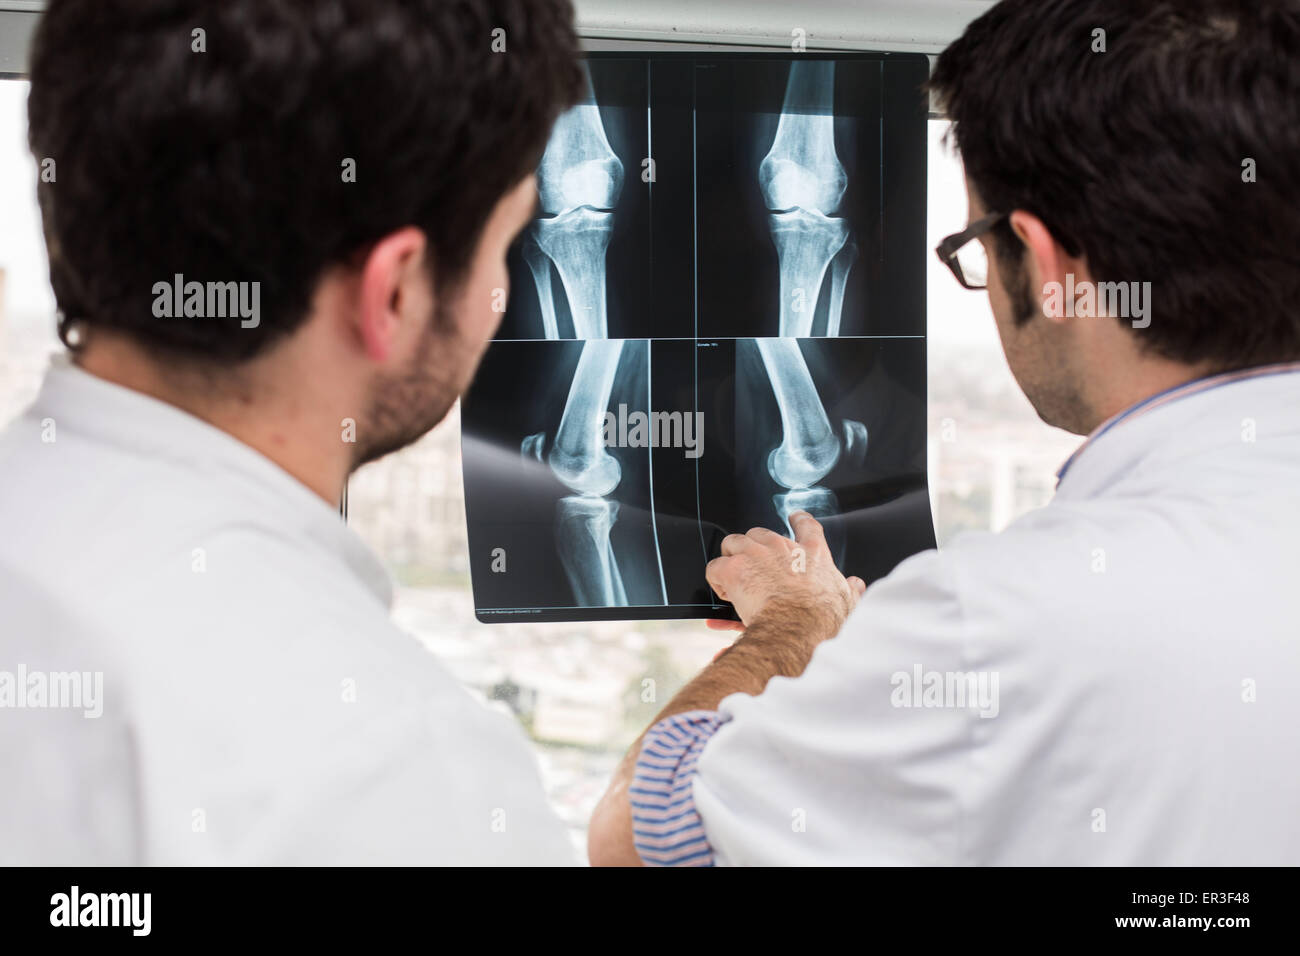 Rhumatologue (droite) et internes l'examen de radiographies du genou d'un patient atteint de polyarthrite rhumatoïde, de l'hôpital de Bordeaux, France. Banque D'Images